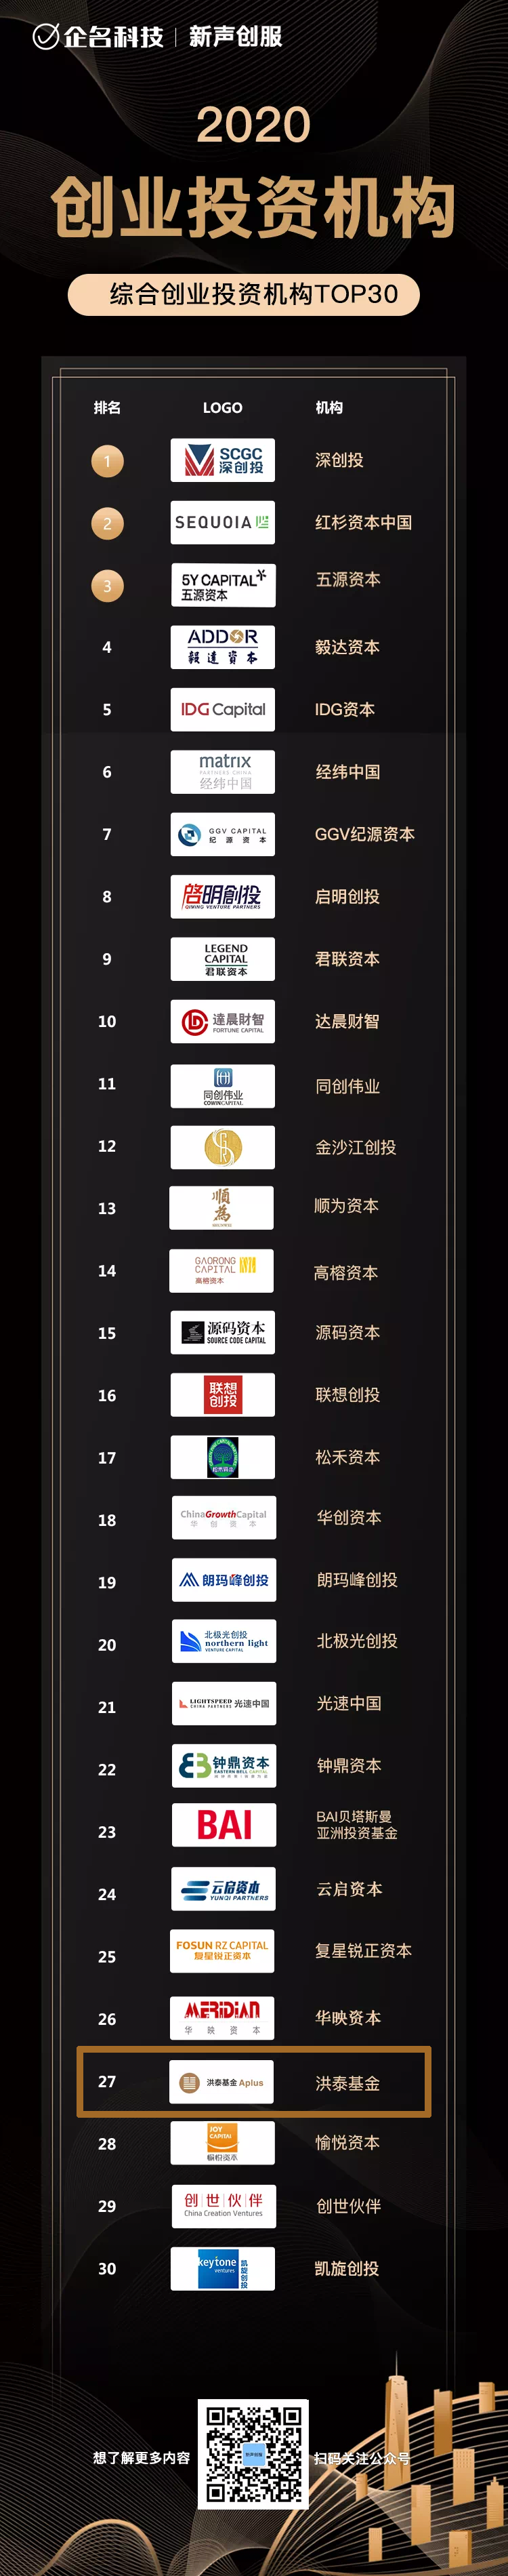 洪泰基金获2020年度中国投资机构榜单4项大奖(图1)